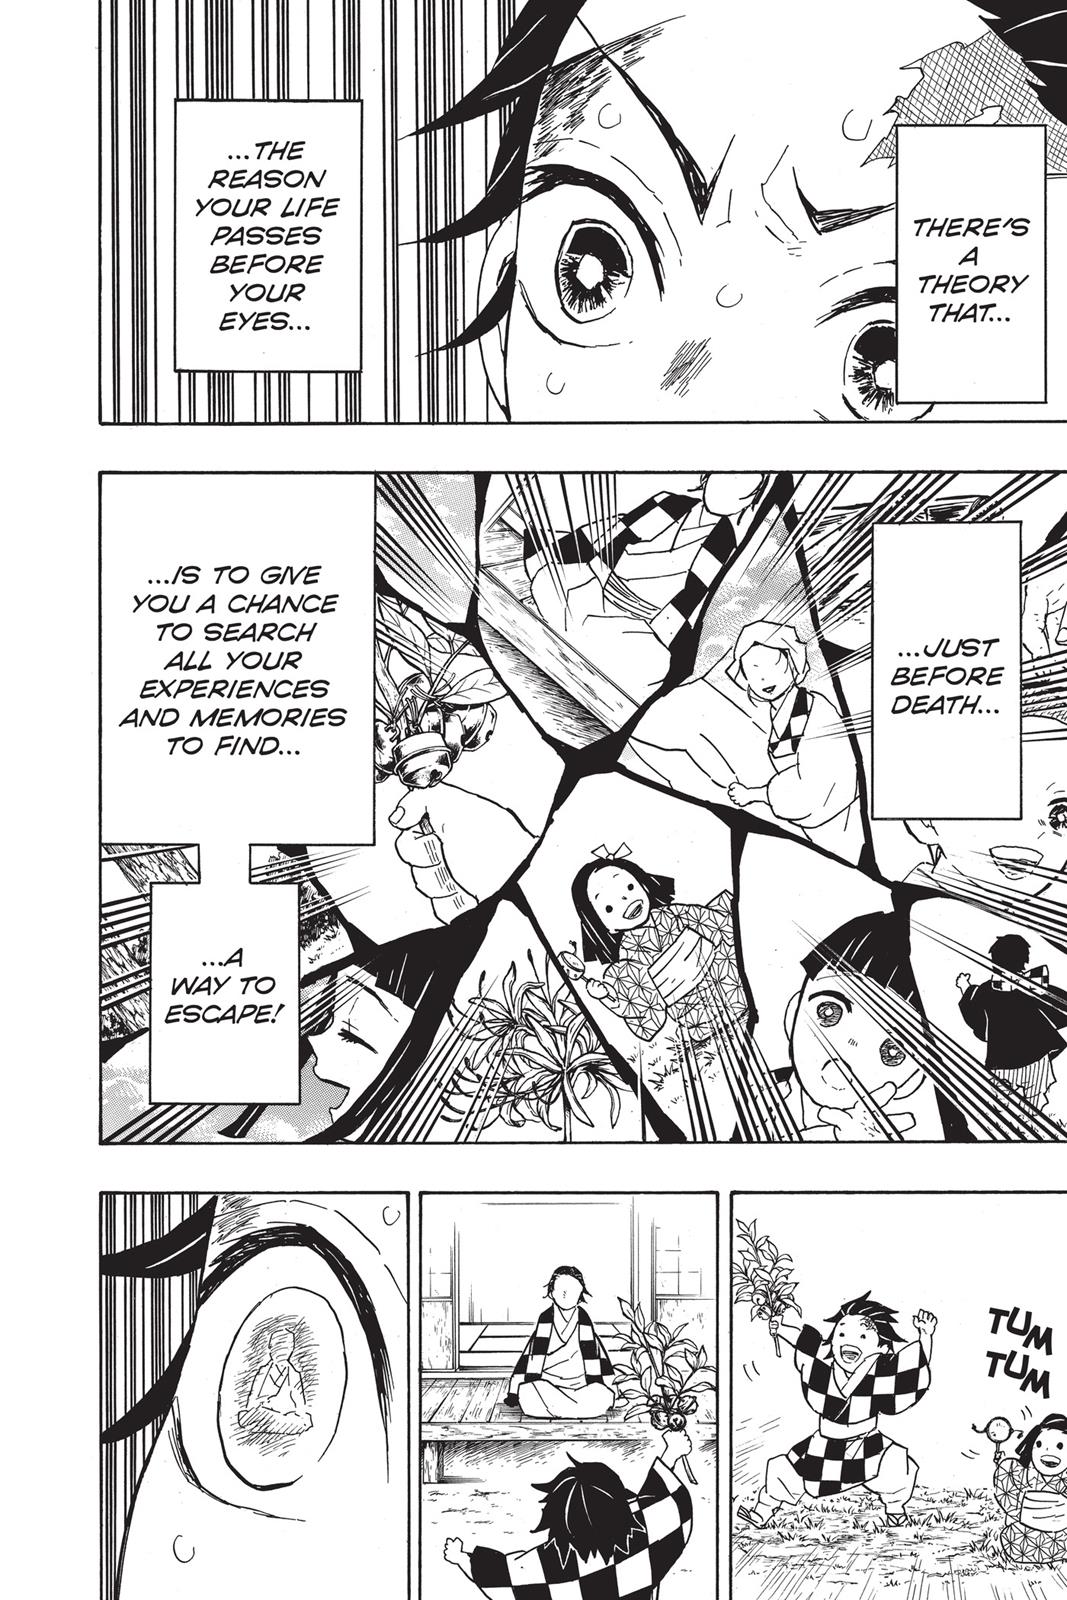 Demon Slayer Manga Manga Chapter - 39 - image 11